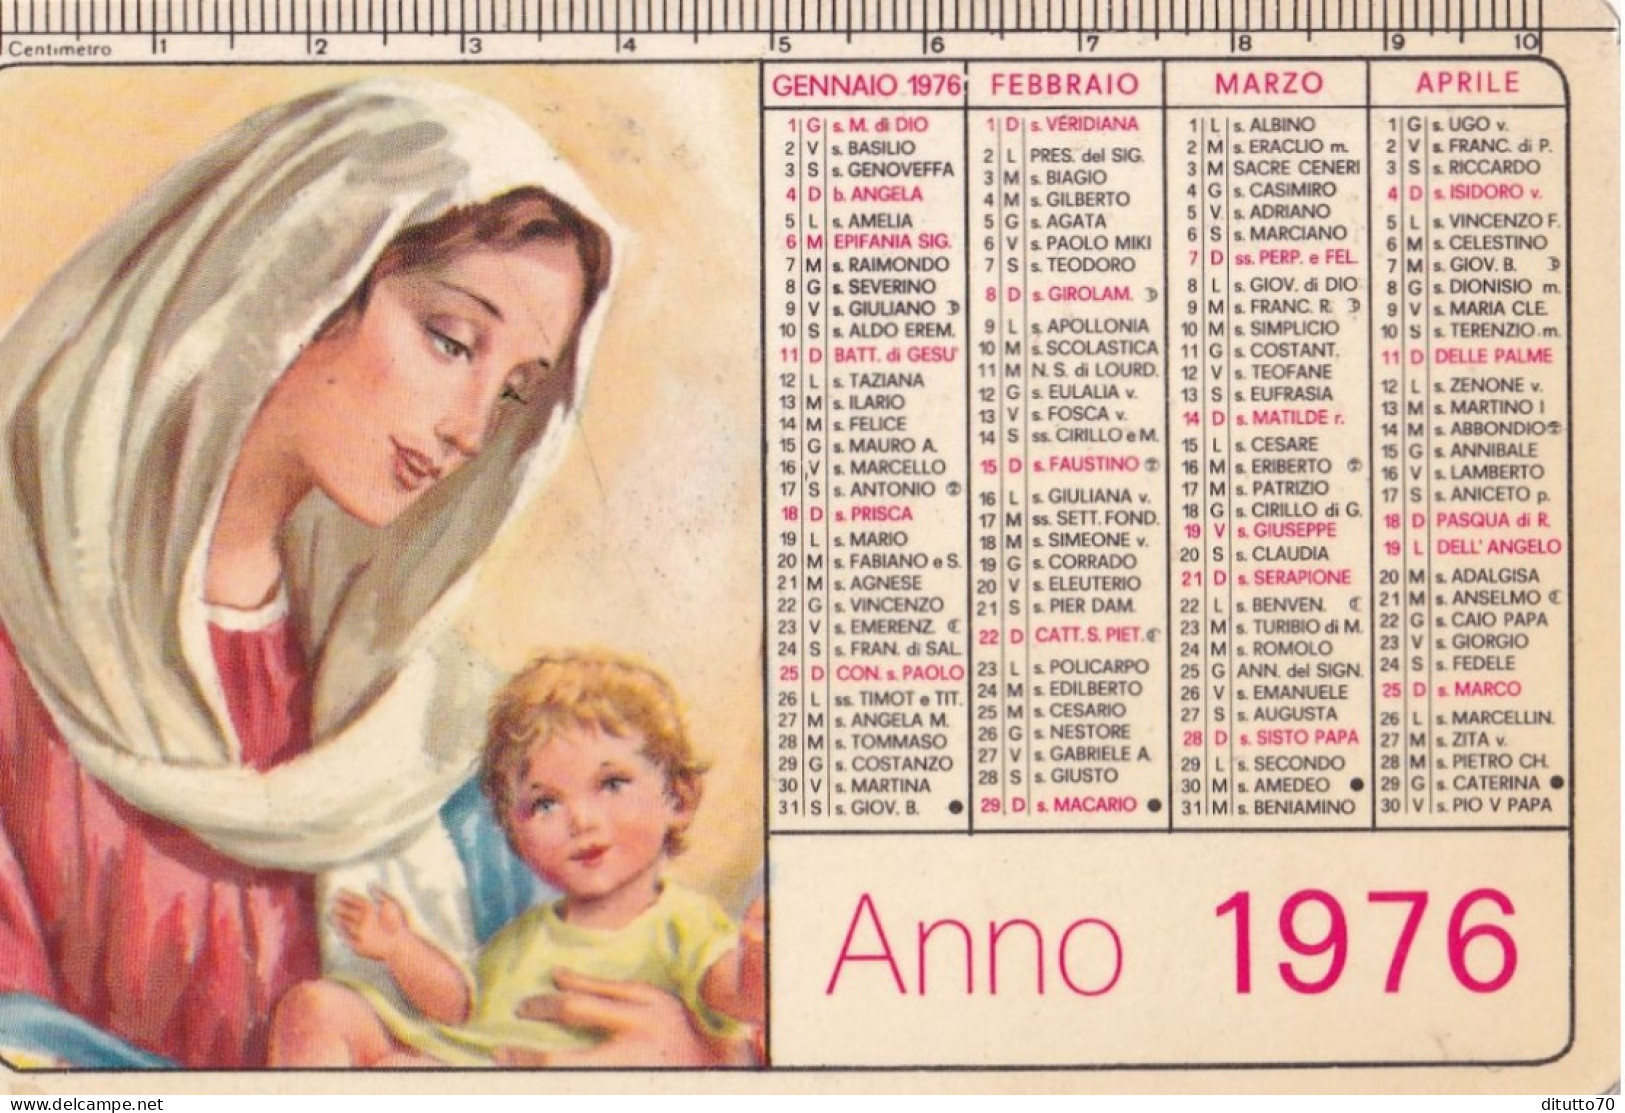 Calendarietto - Scuola Missionaria - Gesù Bambino - S. Antonio A Bate - Napoli - Anno 1976 - Klein Formaat: 1971-80